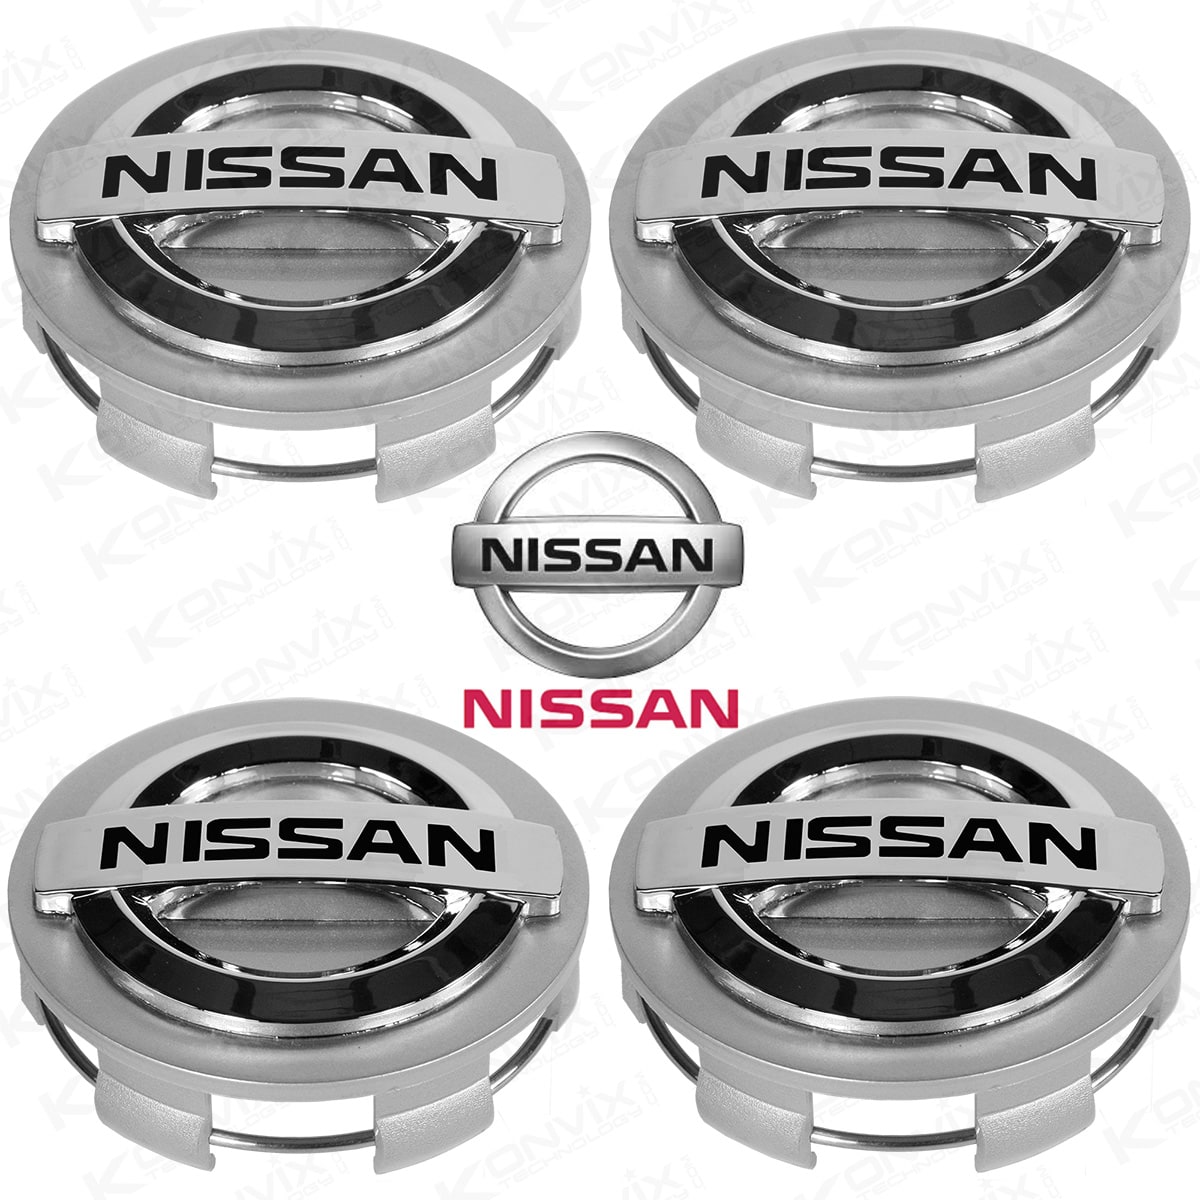 Lot de 4 Caches moyeux NISSAN diamètre 60mm Logo Chrome et noir fond mat